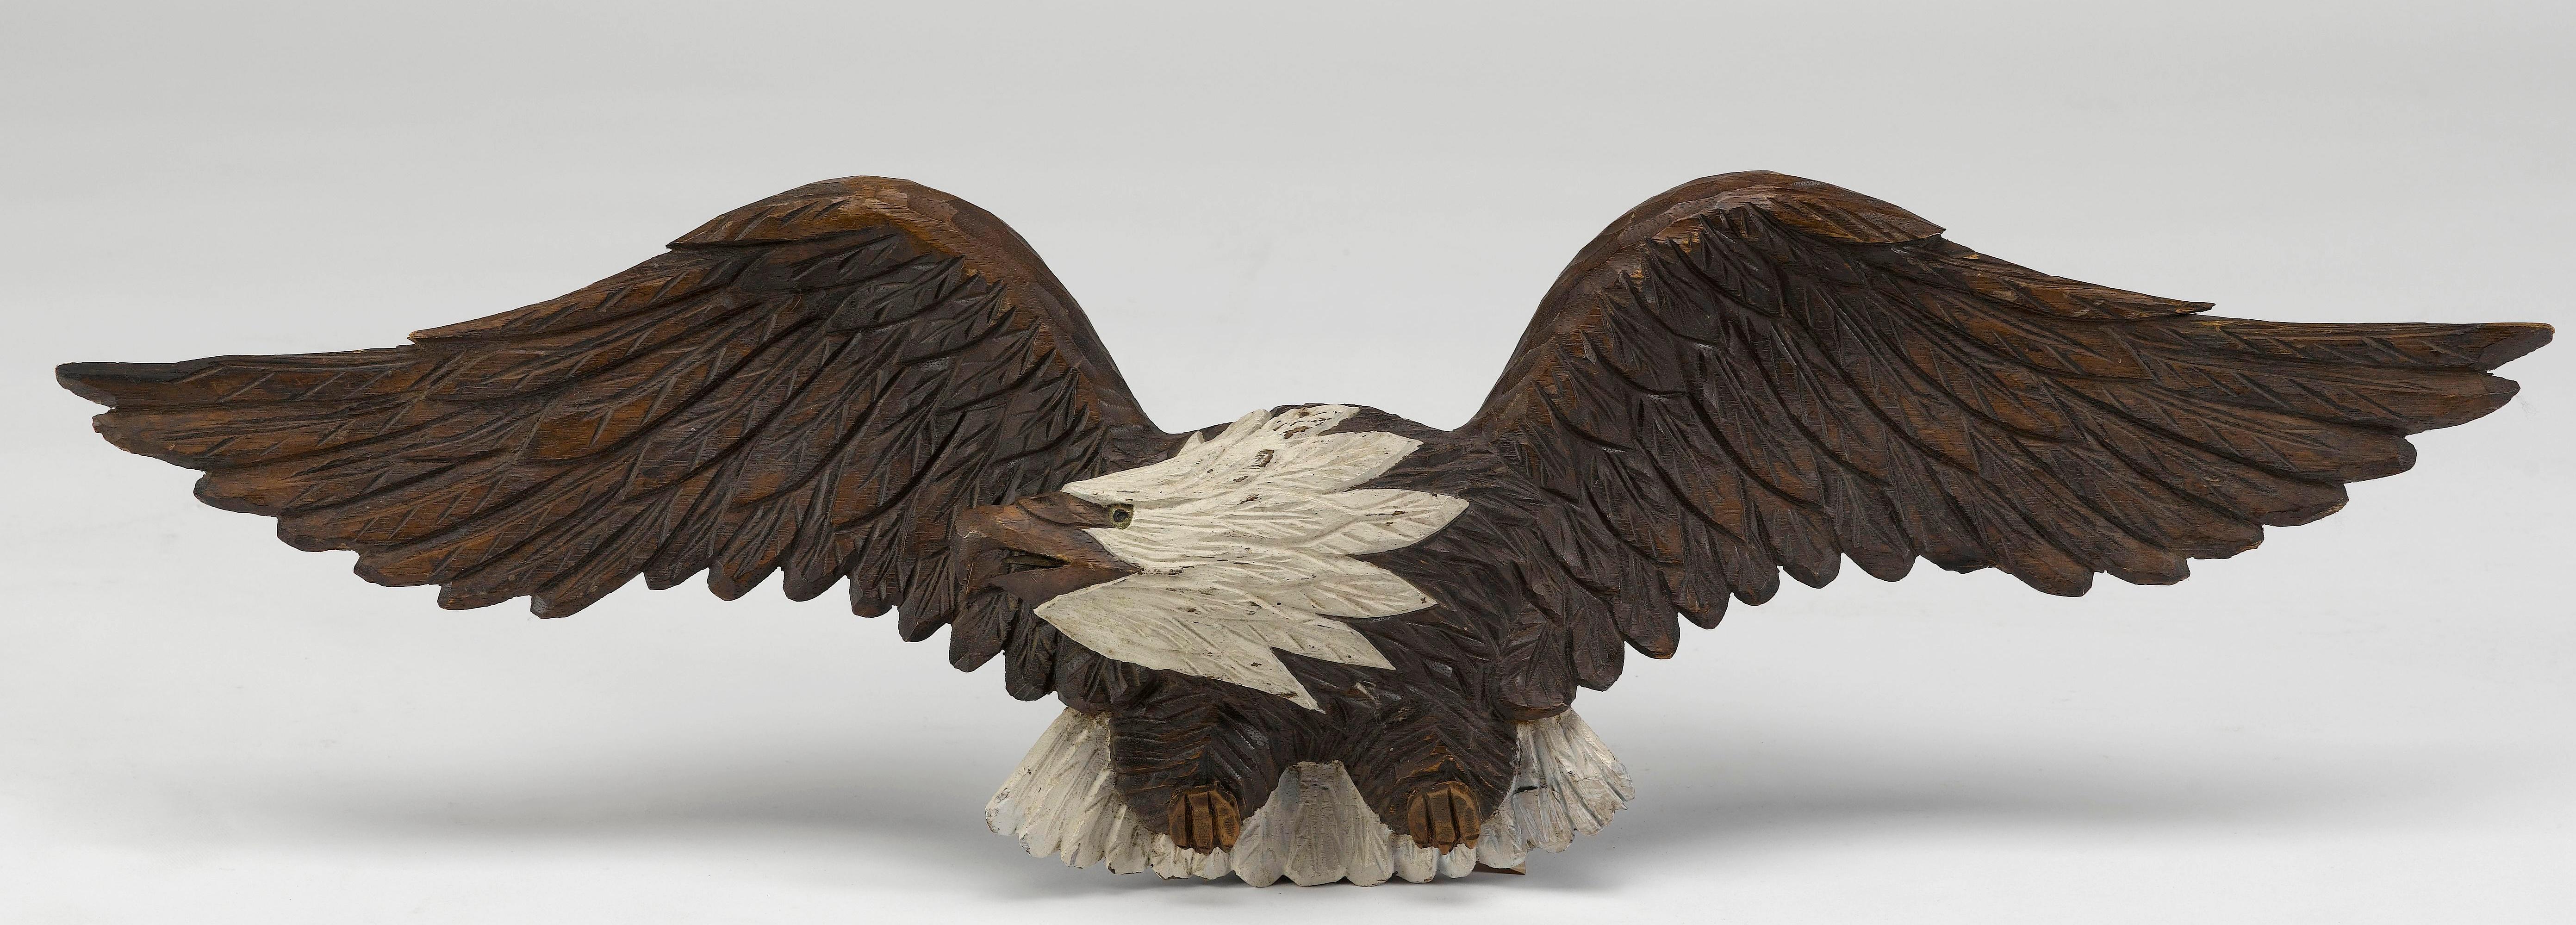 Dies ist ein atemberaubender handgeschnitzter Weißkopfseeadler aus dem frühen bis mittleren 20. Der Adler ist aus einem großen Stück Holz geschnitzt, wodurch die komplizierten Details an Federn und Schnabel noch beeindruckender werden. Der Adler ist